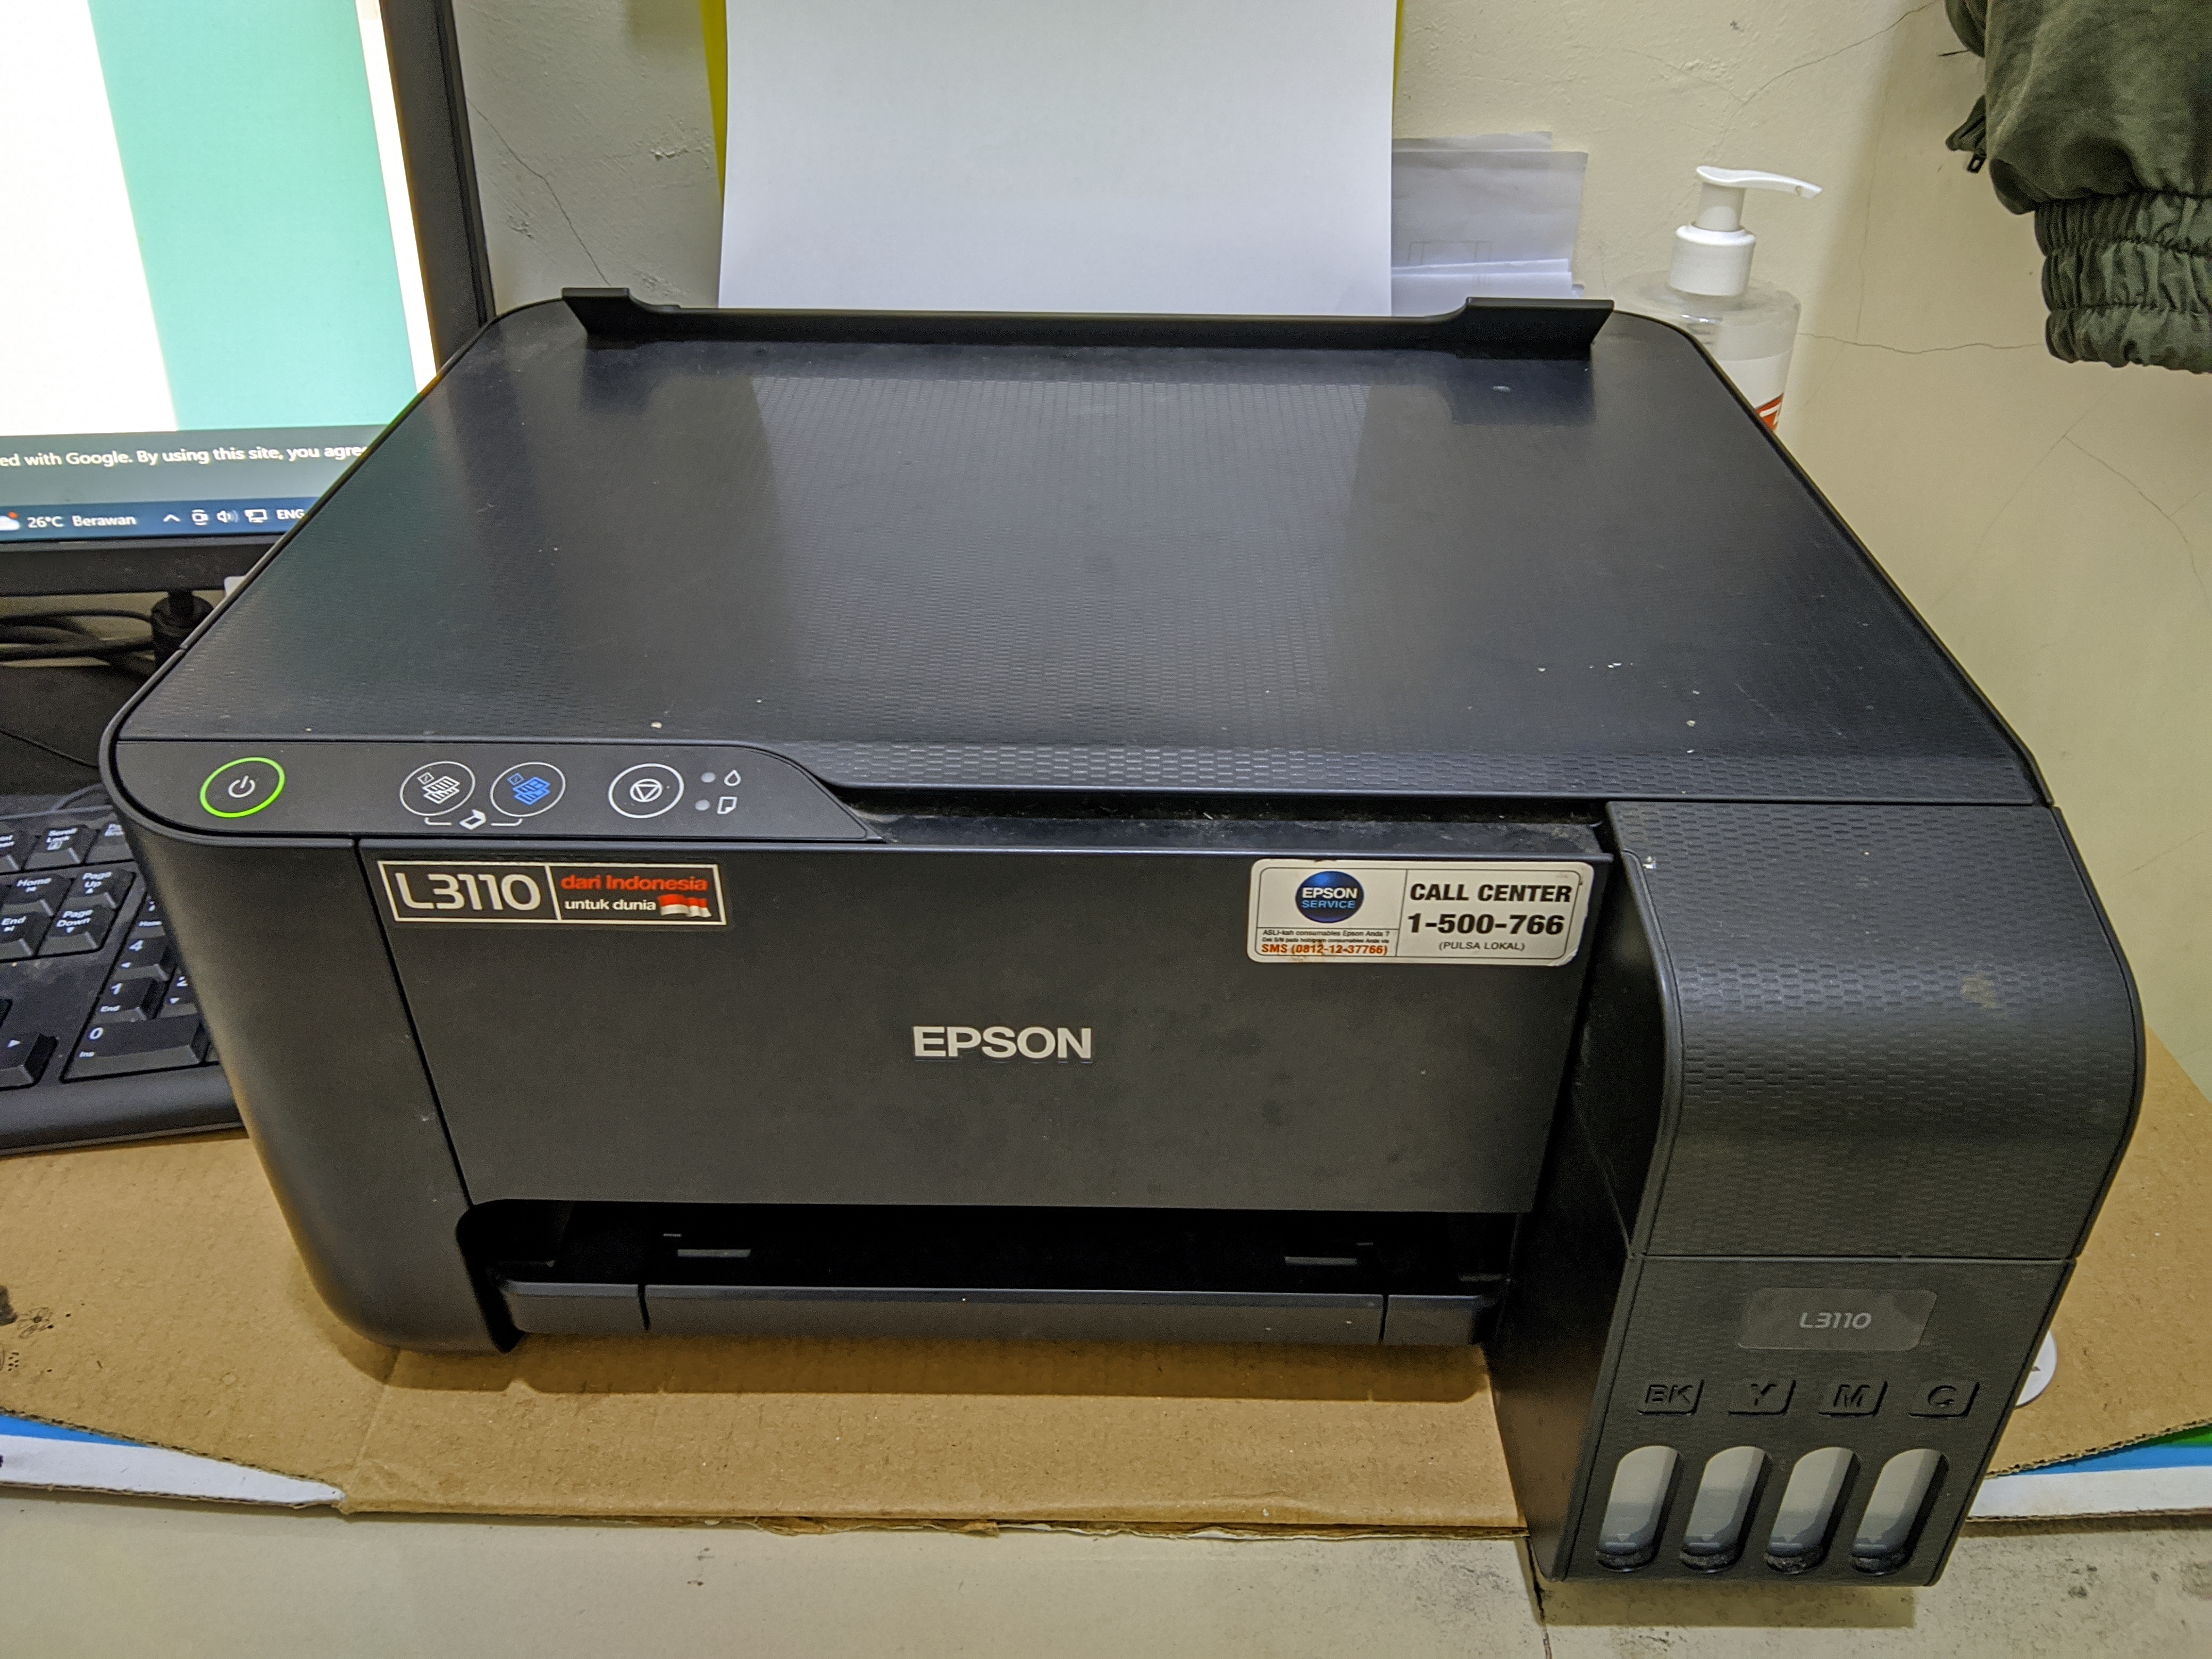 Cara Fotocopy Menggunakan Printer Epson L3110